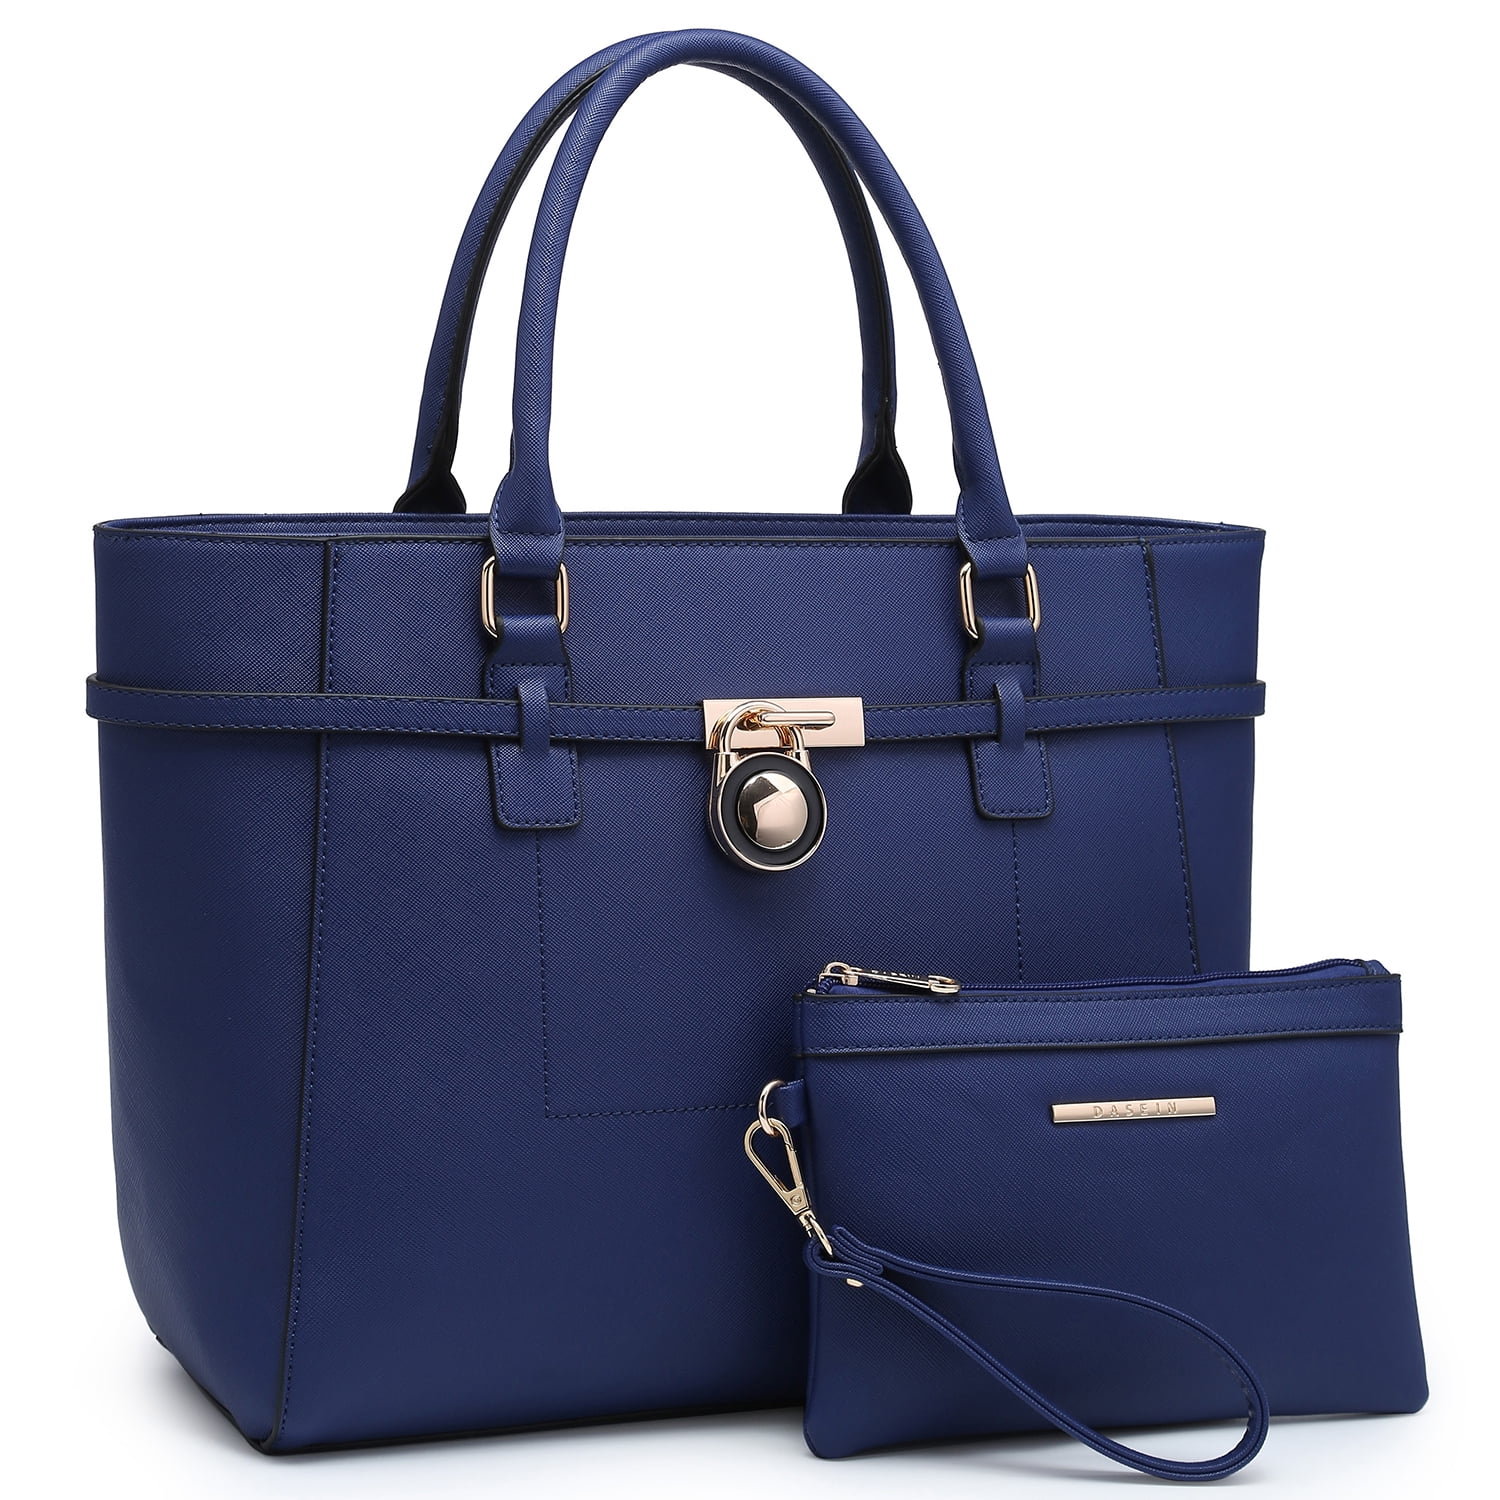 Women's Handbag Large Top Belted Padlock Shoulder Bag Tote Satchel ...